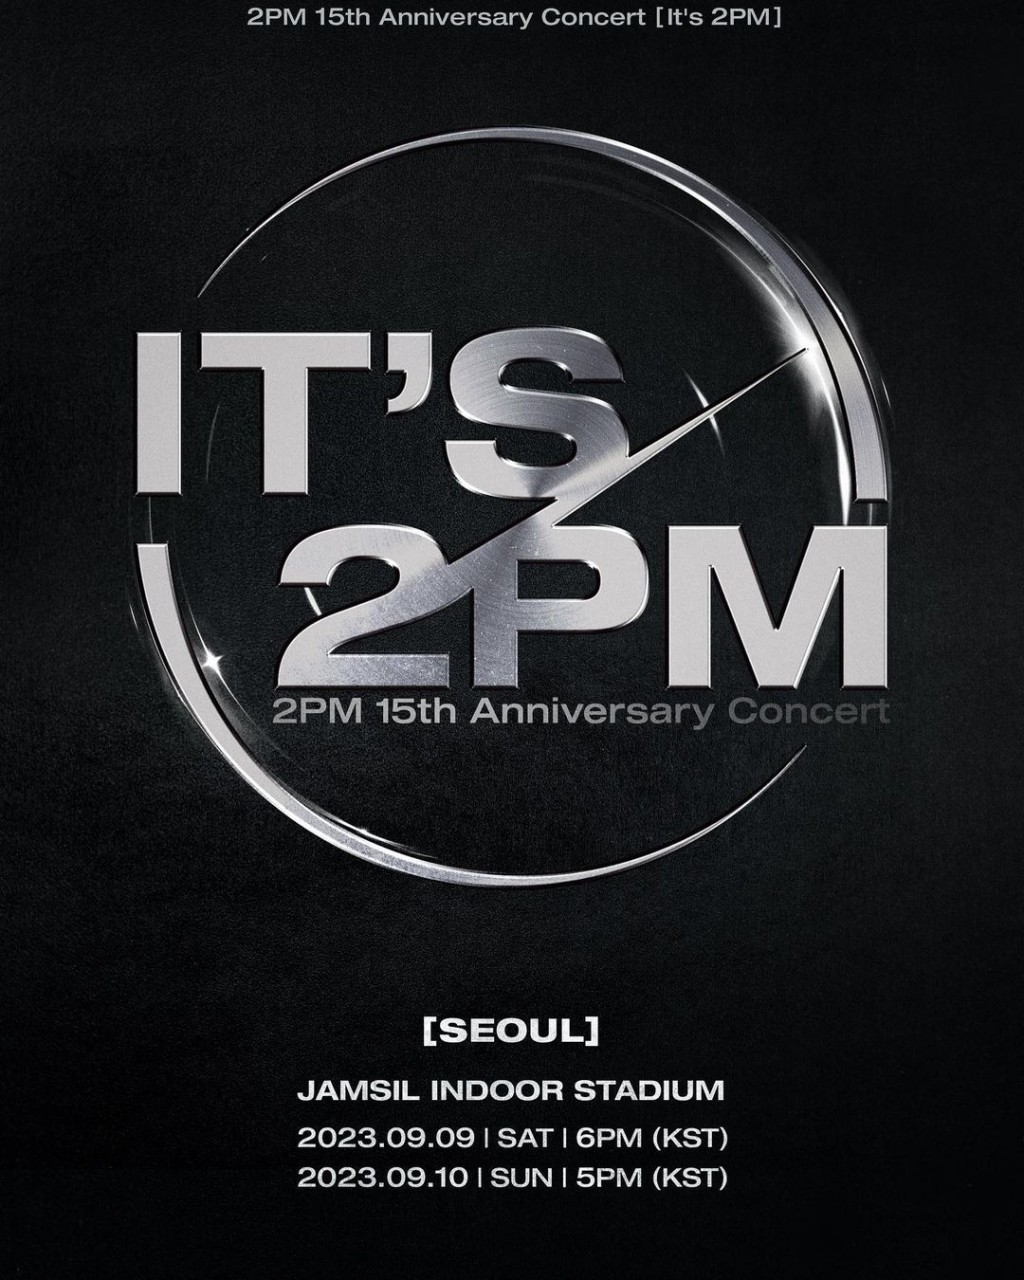 泽演的组合2PM亦踏入15周年，将在首尔及日本举行纪念演唱会。